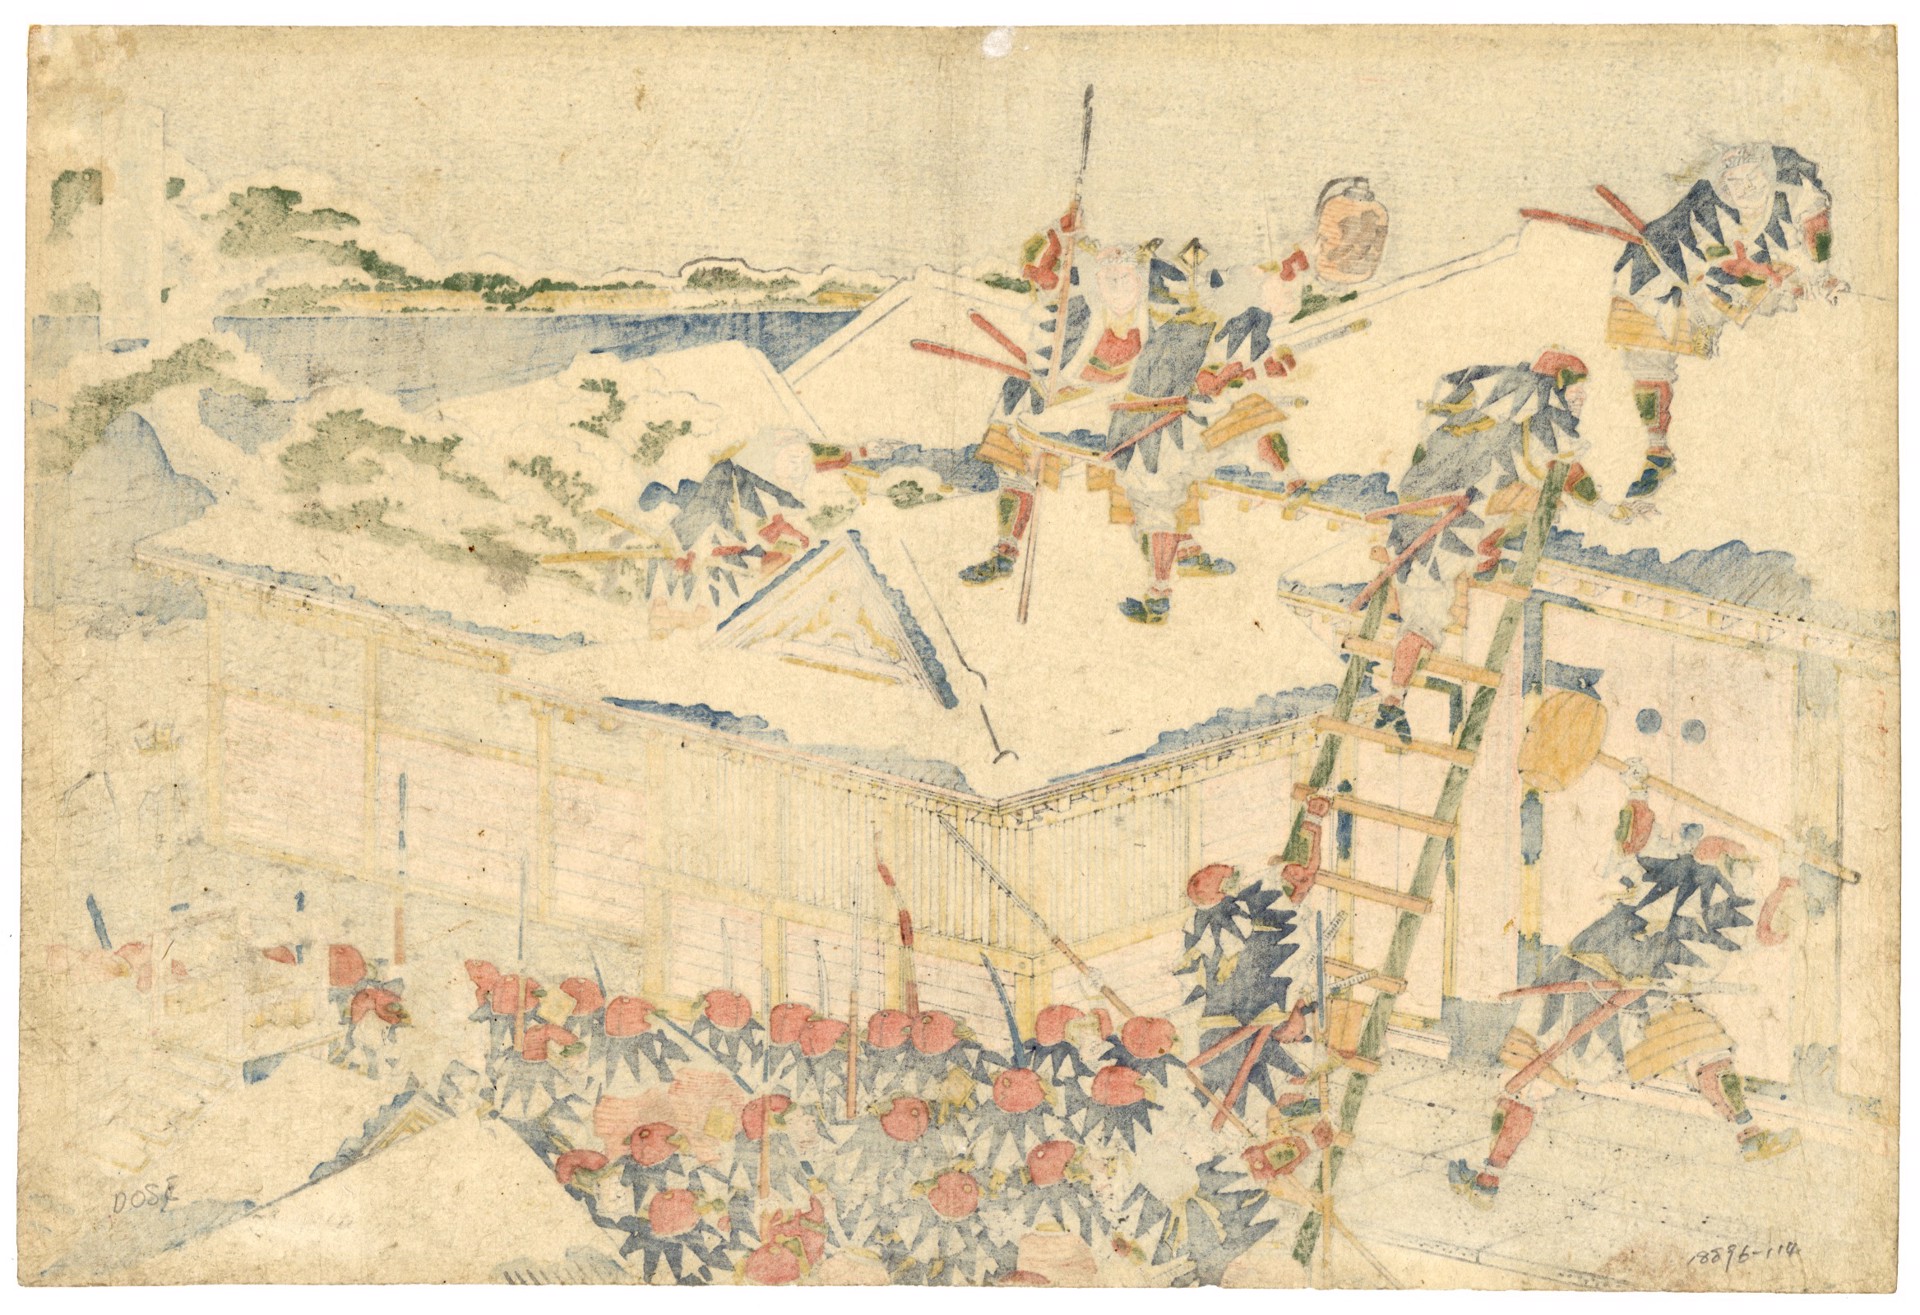 Act 11 (Juichidanme) by Hokusai